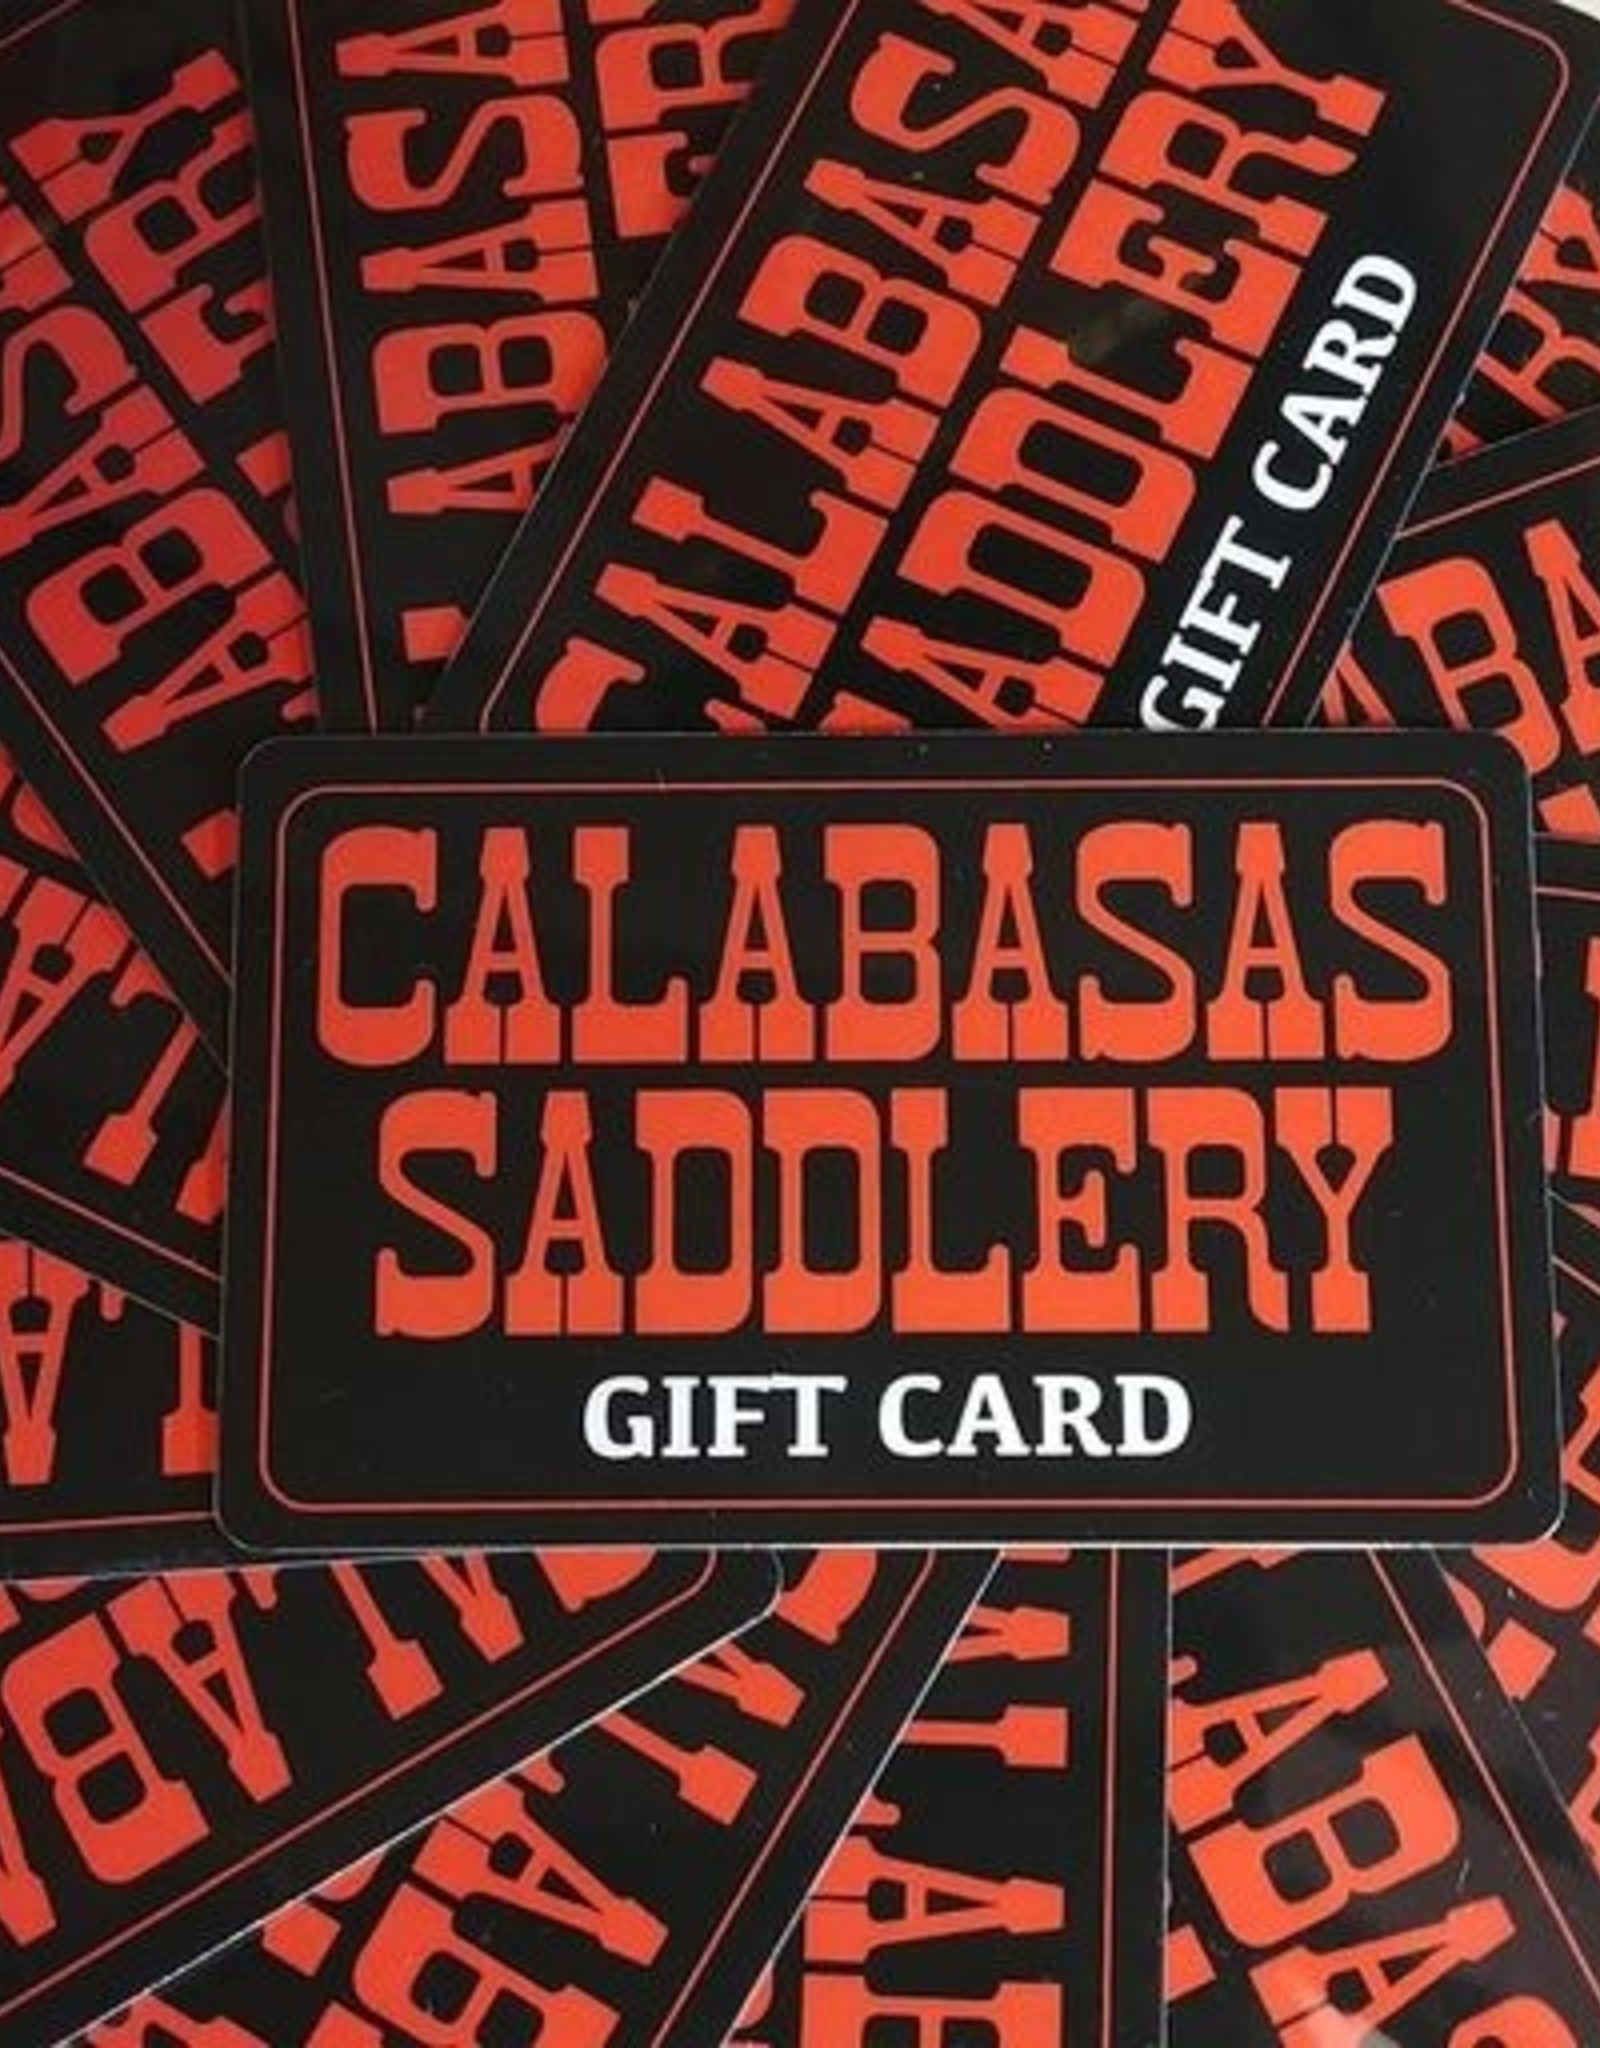 Calabasas Saddlery Physical Gift Card